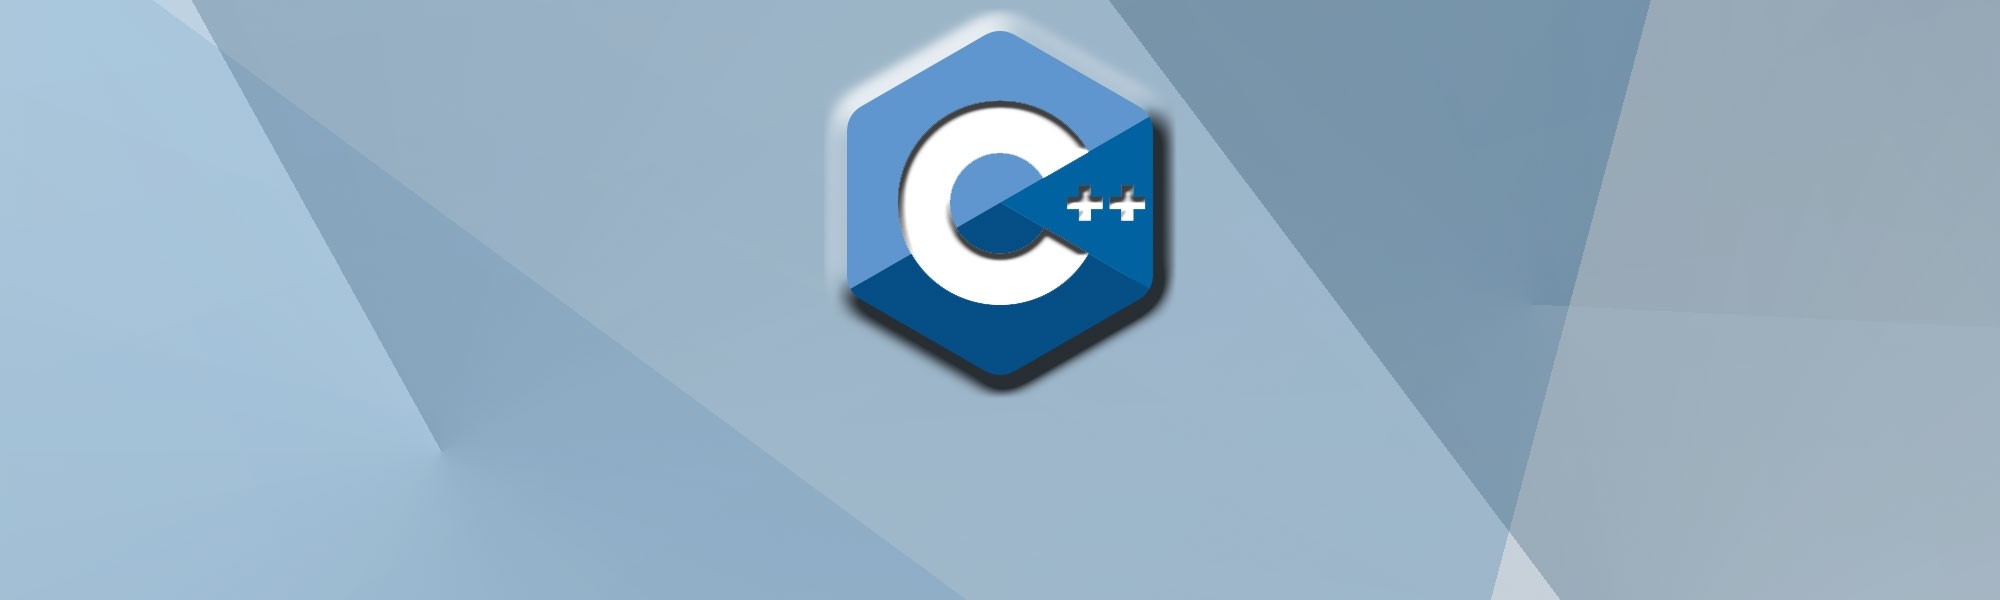 C/C++ Developers